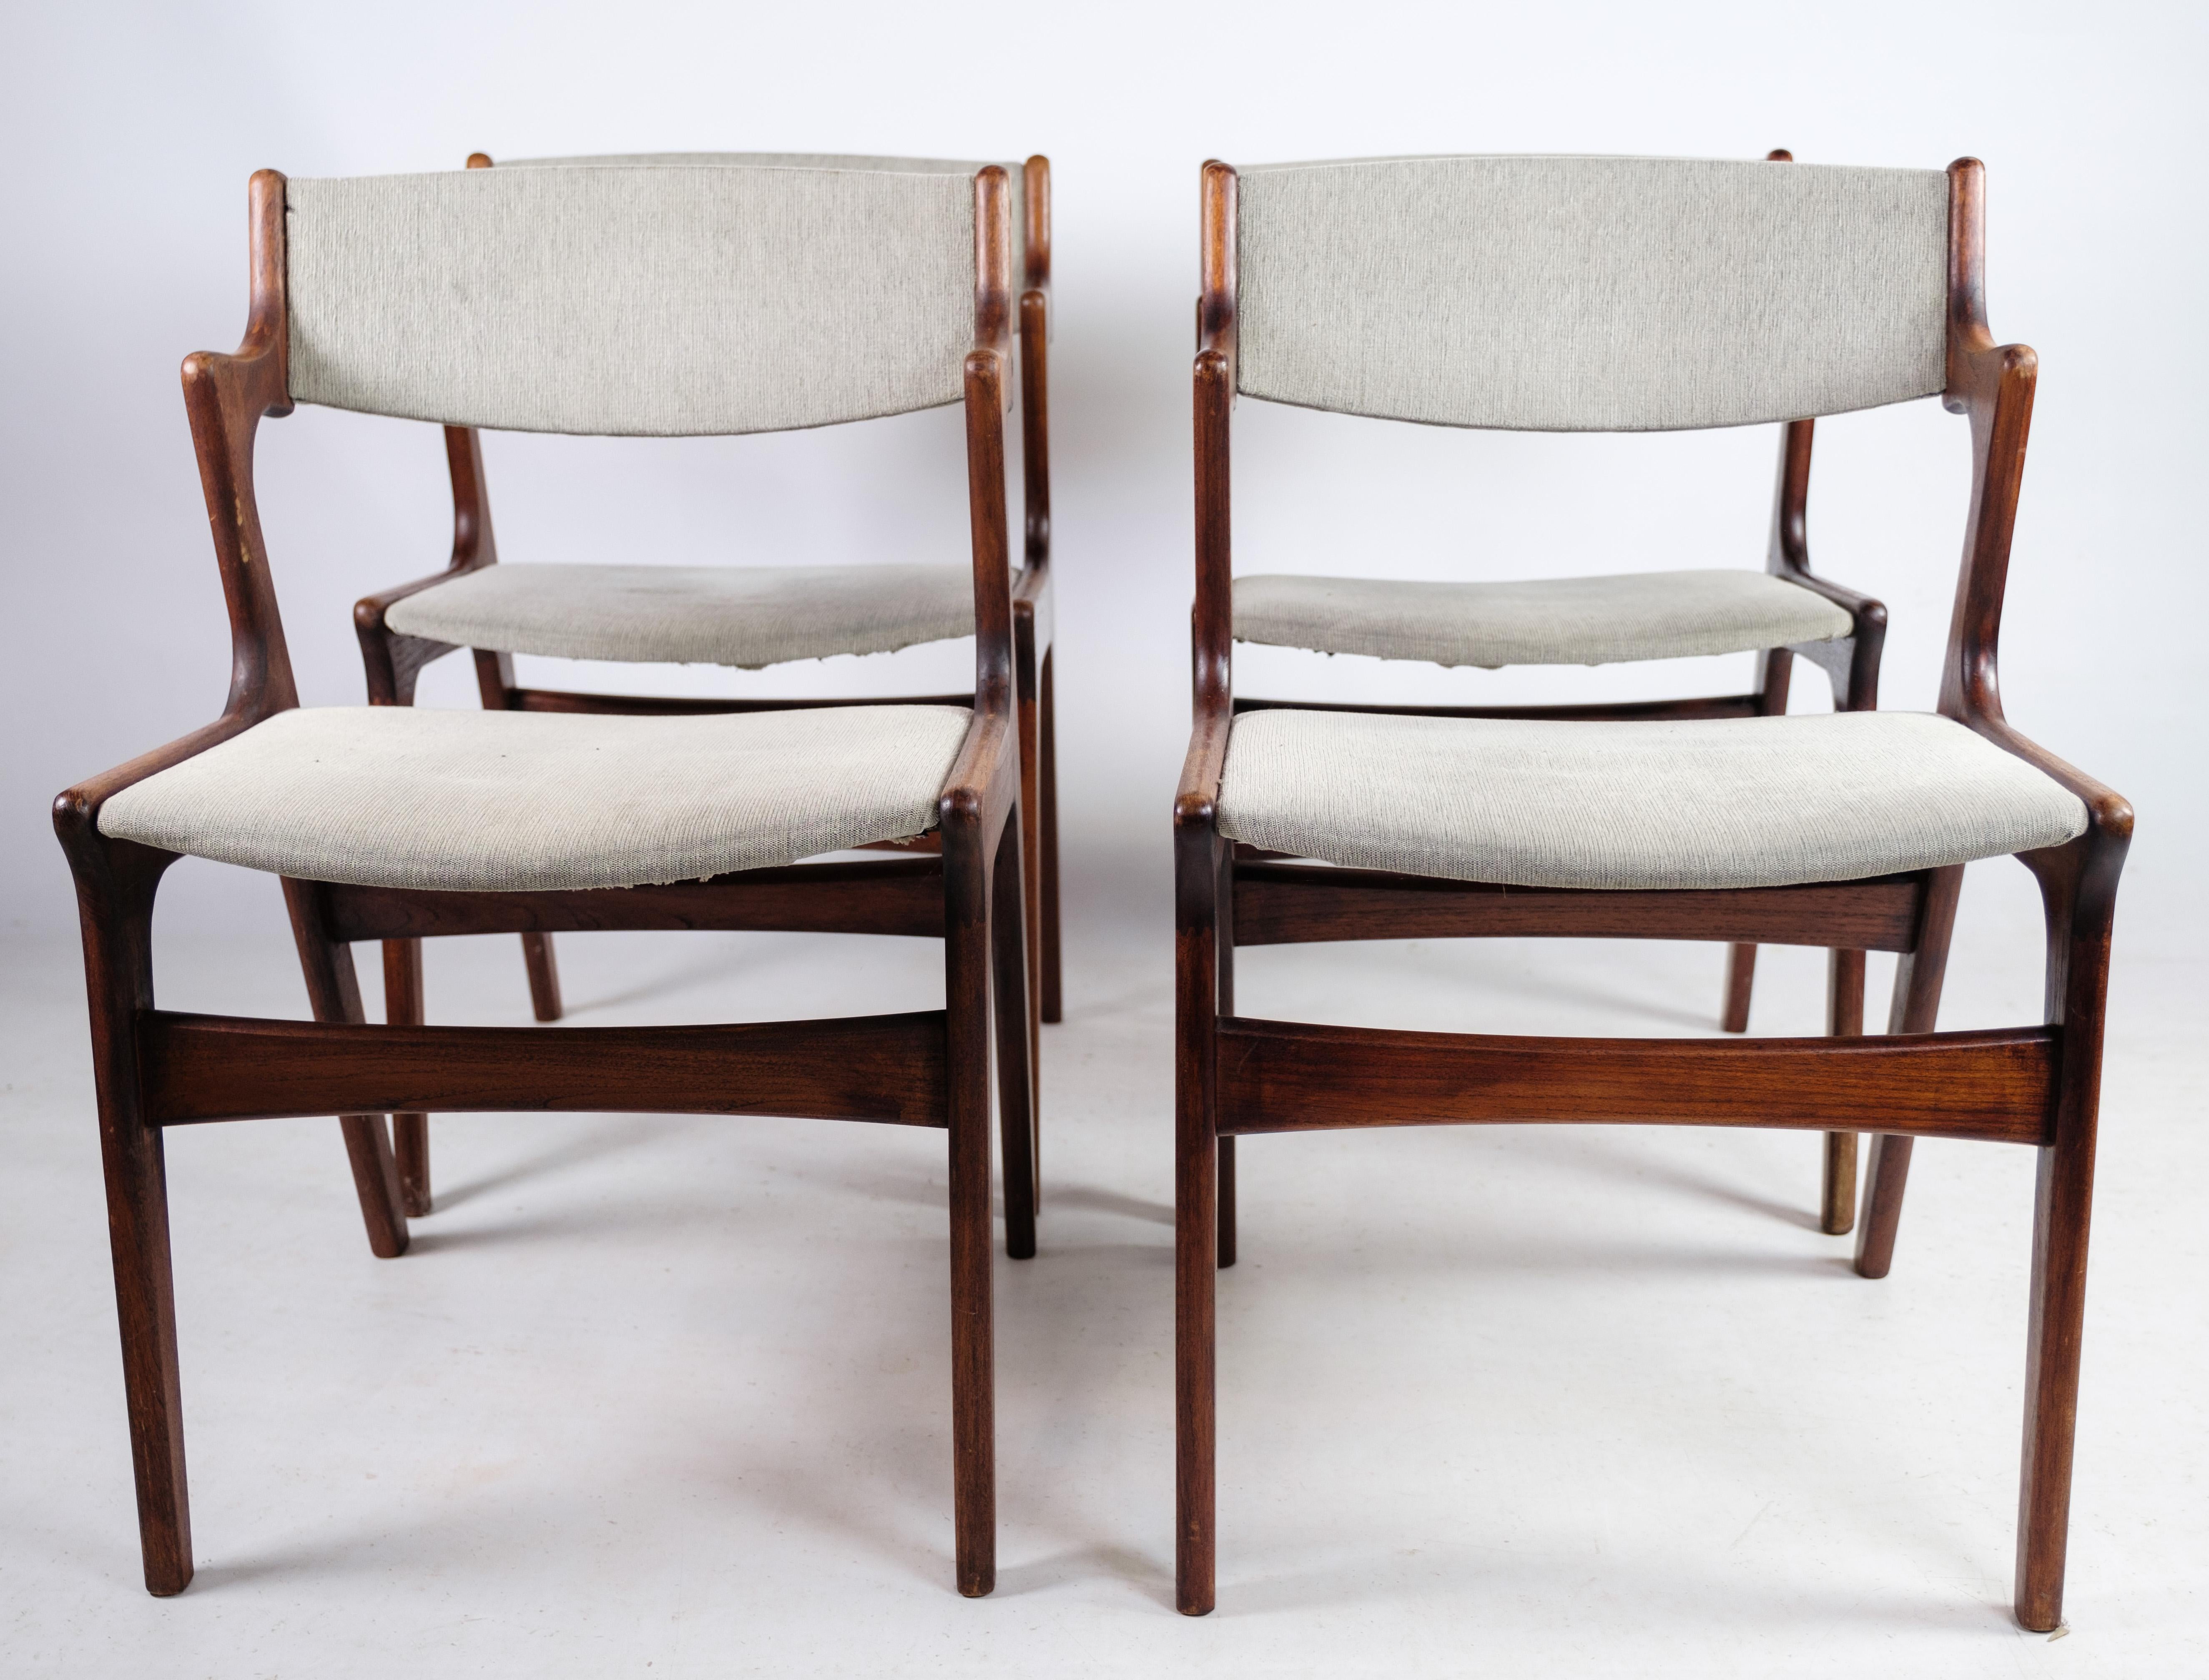 Cet ensemble de quatre fauteuils, fabriqués en bois de teck et conçus par Nova Furniture vers les années 1960, représente une expression intemporelle du design danois du milieu du siècle. Avec leurs lignes épurées, leur riche finition en teck et